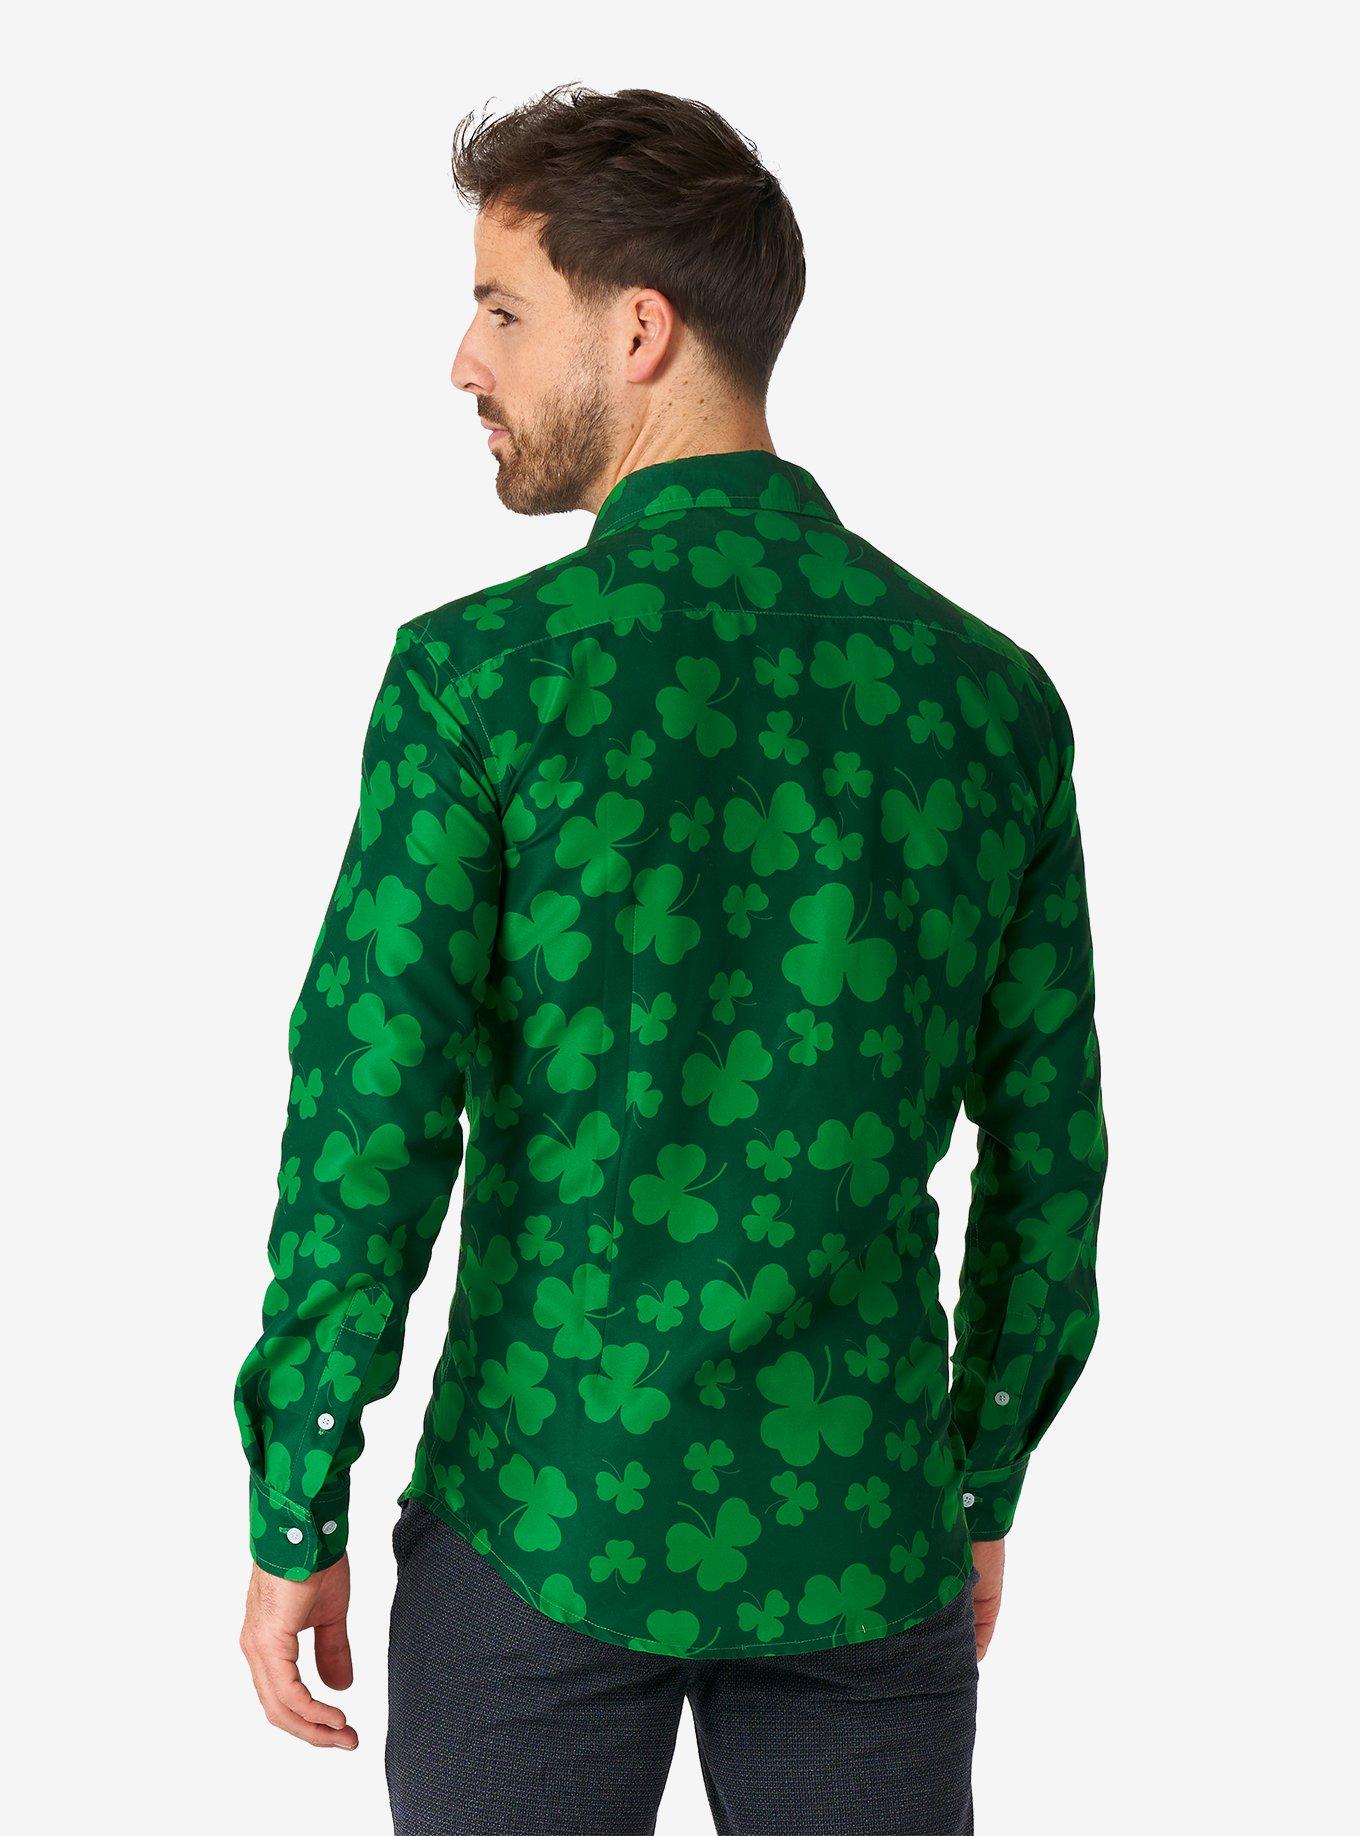 St. Pats Green Long Sleeve Button-Up Shirt, GREEN, alternate